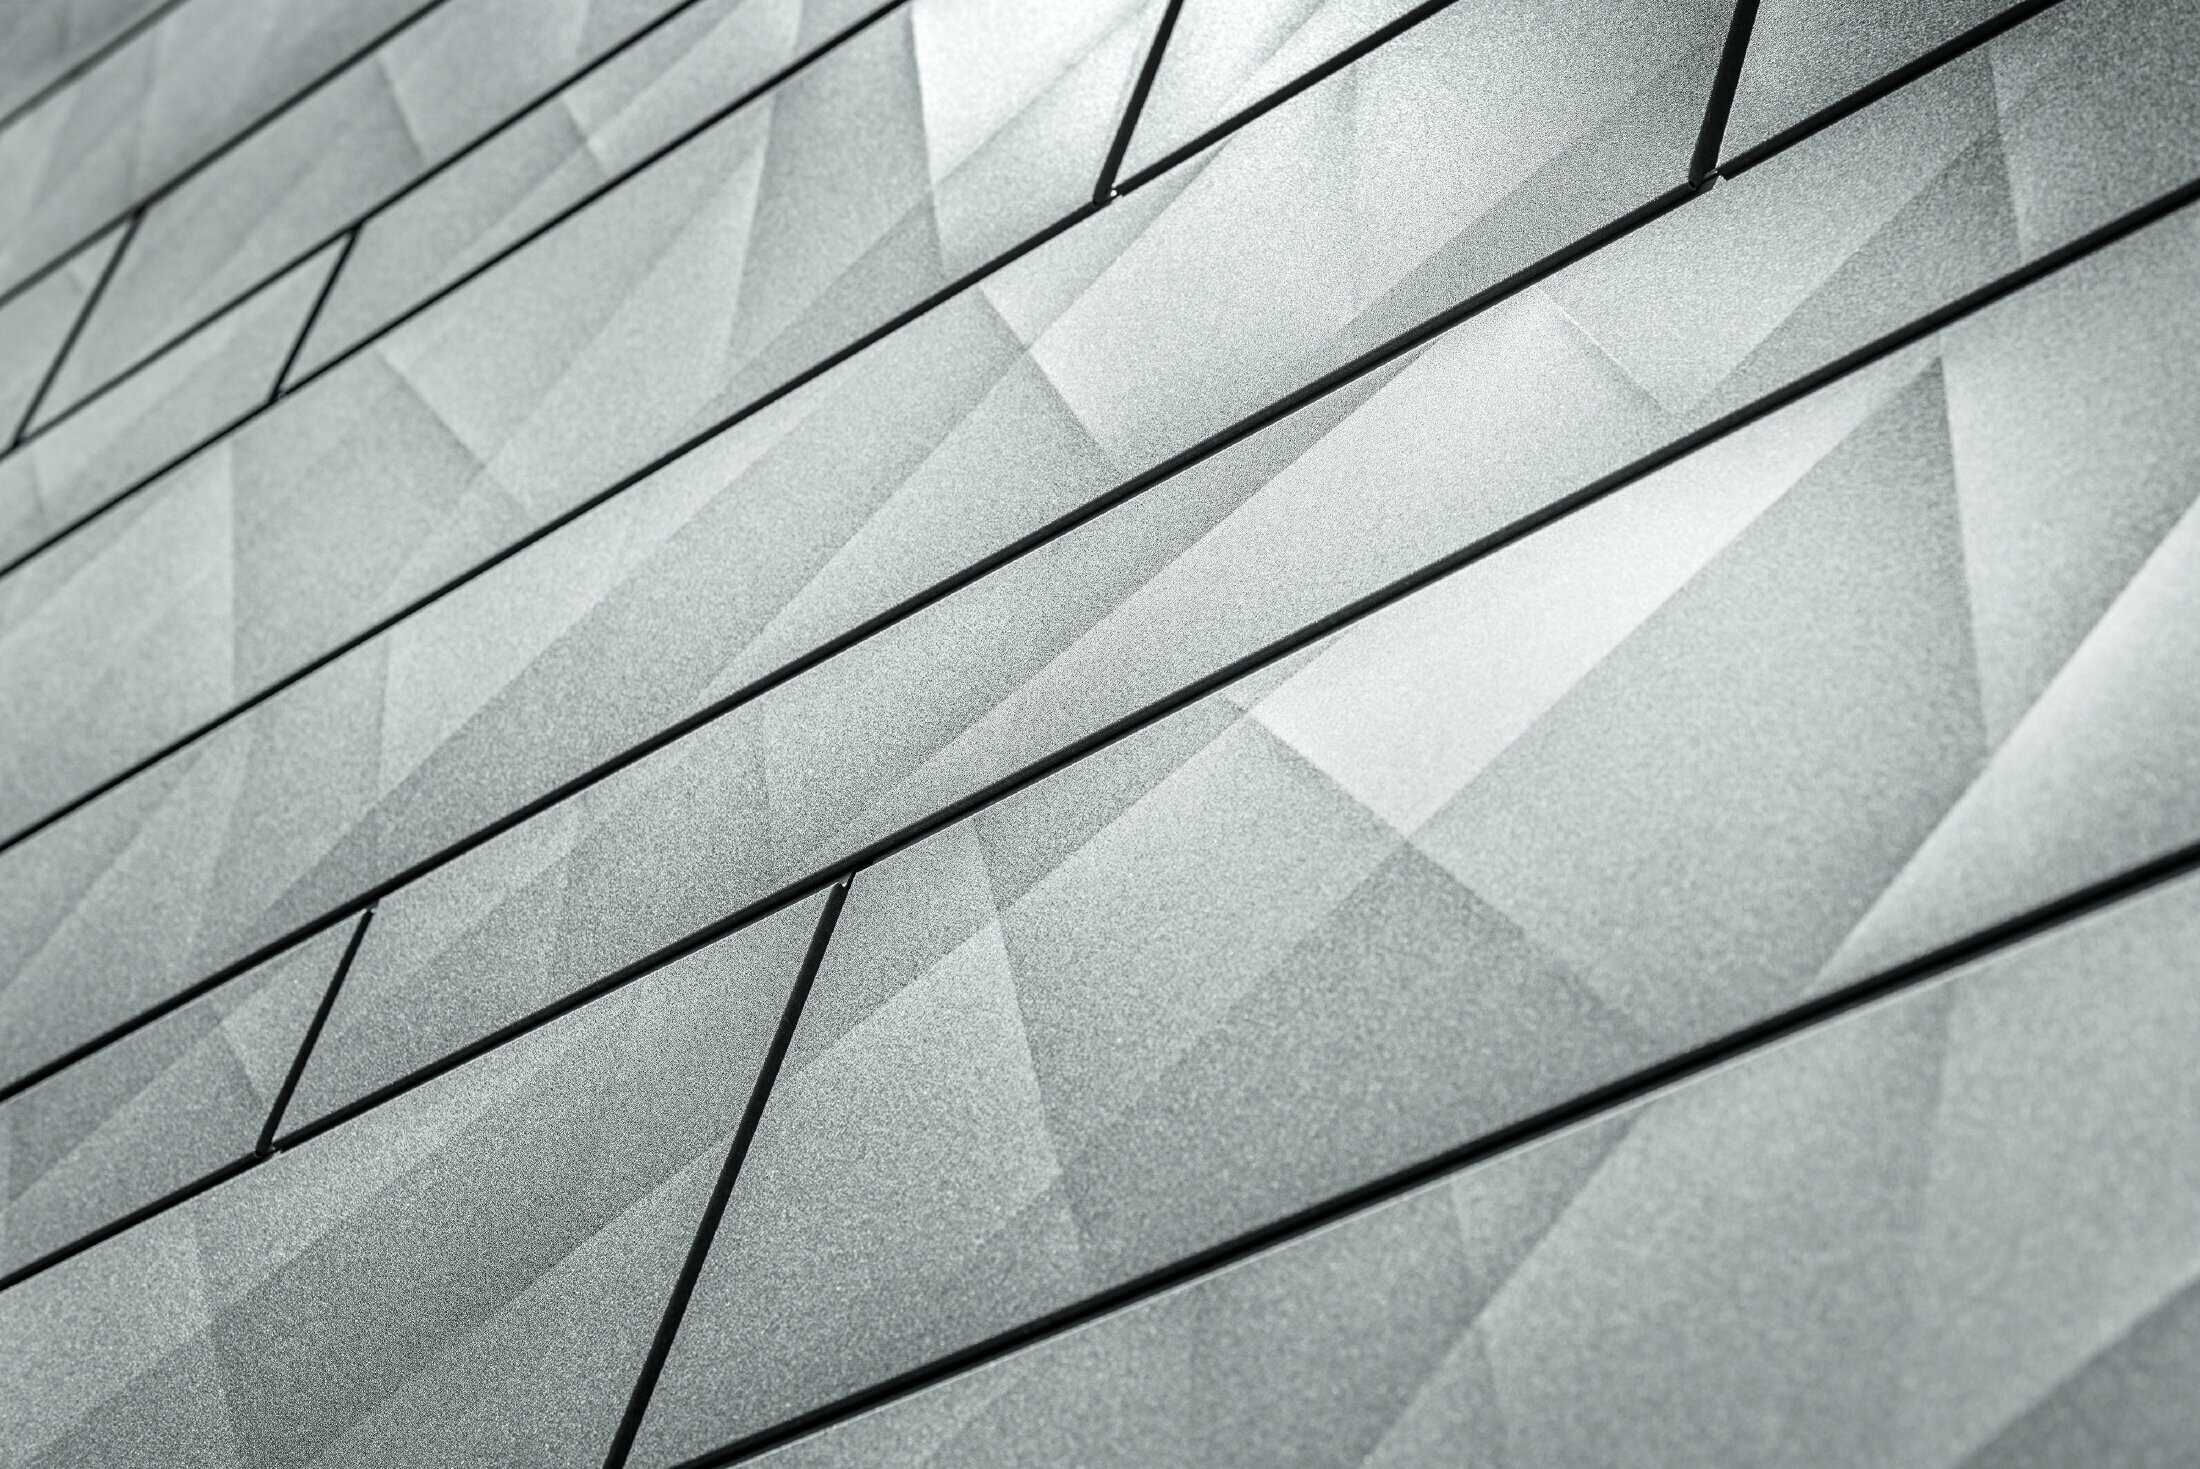 Gros plan sur le panneau de façade Siding.X couleur gris pierre de PREFA. Sur les panneaux, on aperçoit les plis irréguliers avec l’aspect naturel de l’imitation pierre.